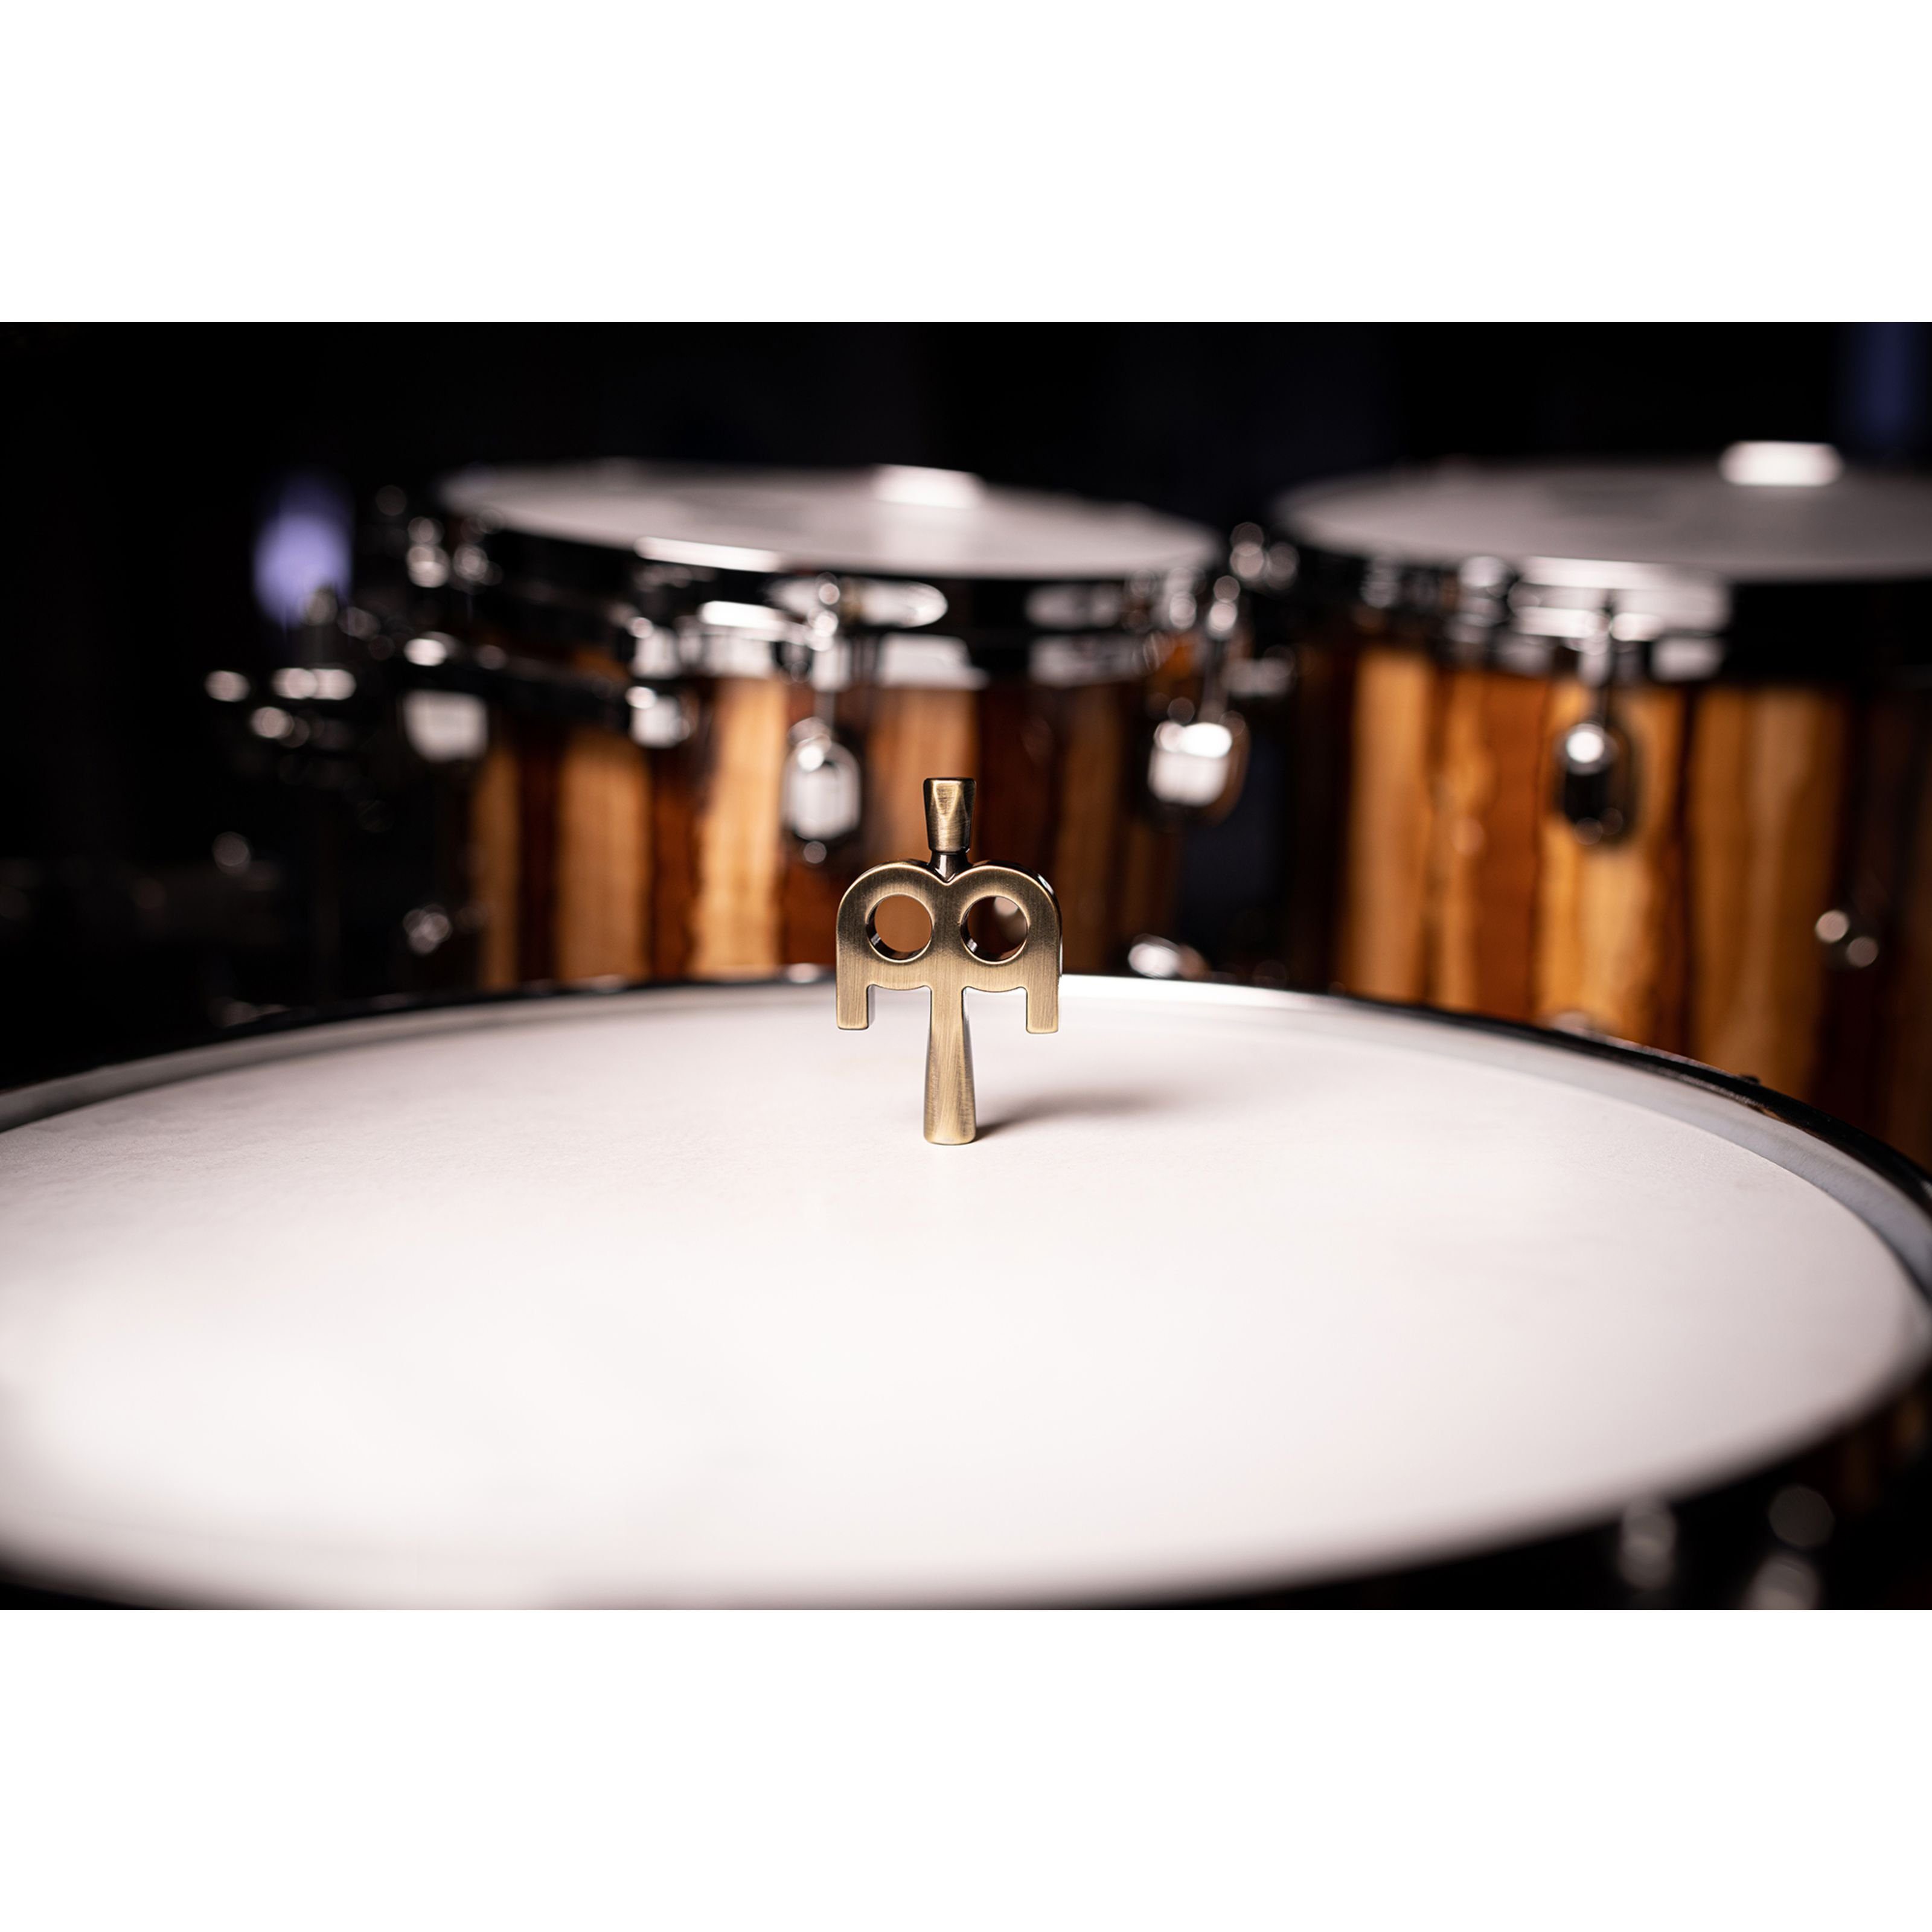 Meinl Percussion Spielzeug-Musikinstrument, für Kinetic Stimmschlüssel Key Antique Bronze SB510 Schlagzeuge 